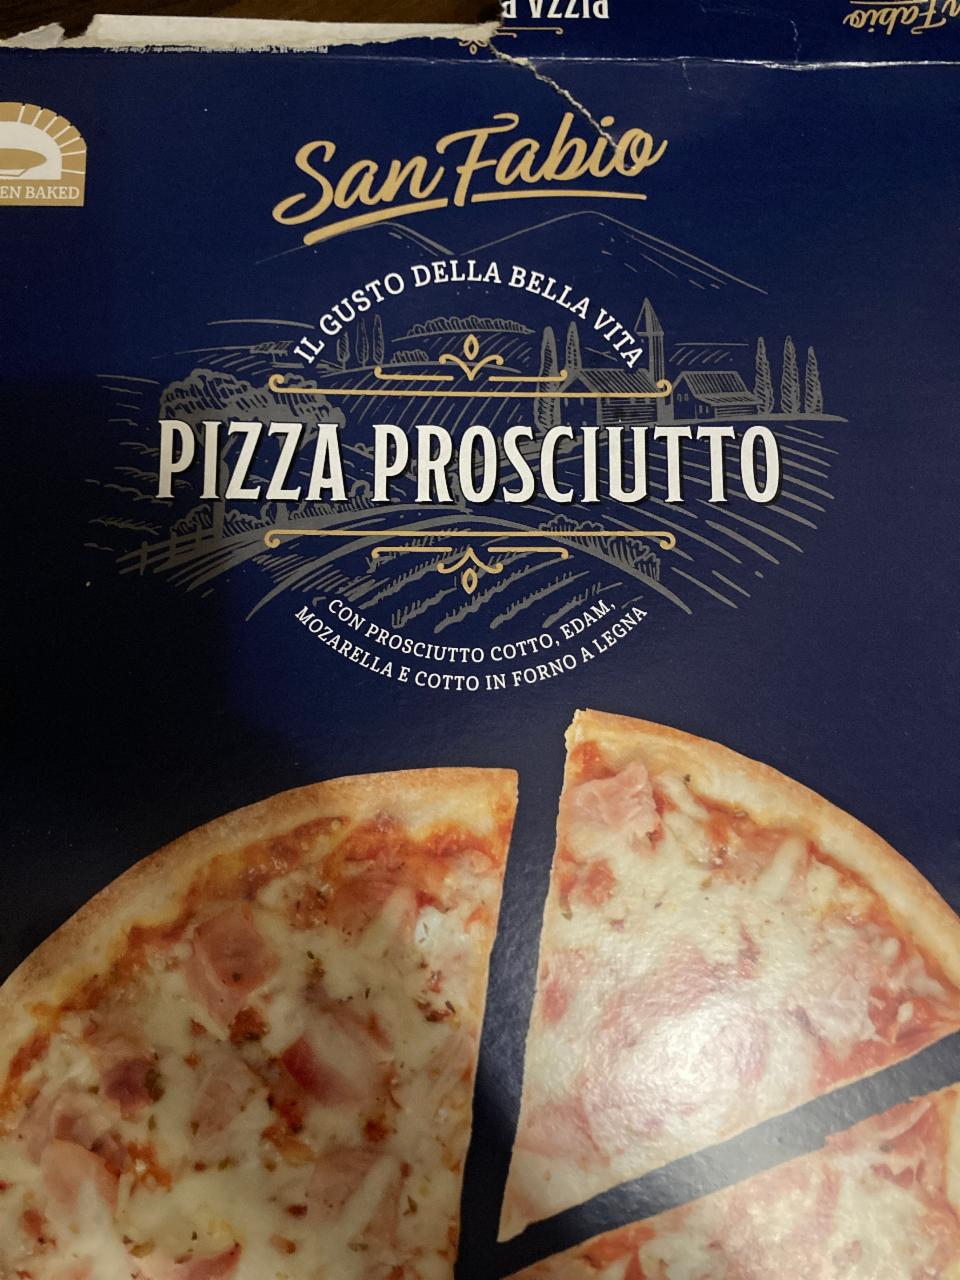 Képek - Pizza prosciutto San Fabio